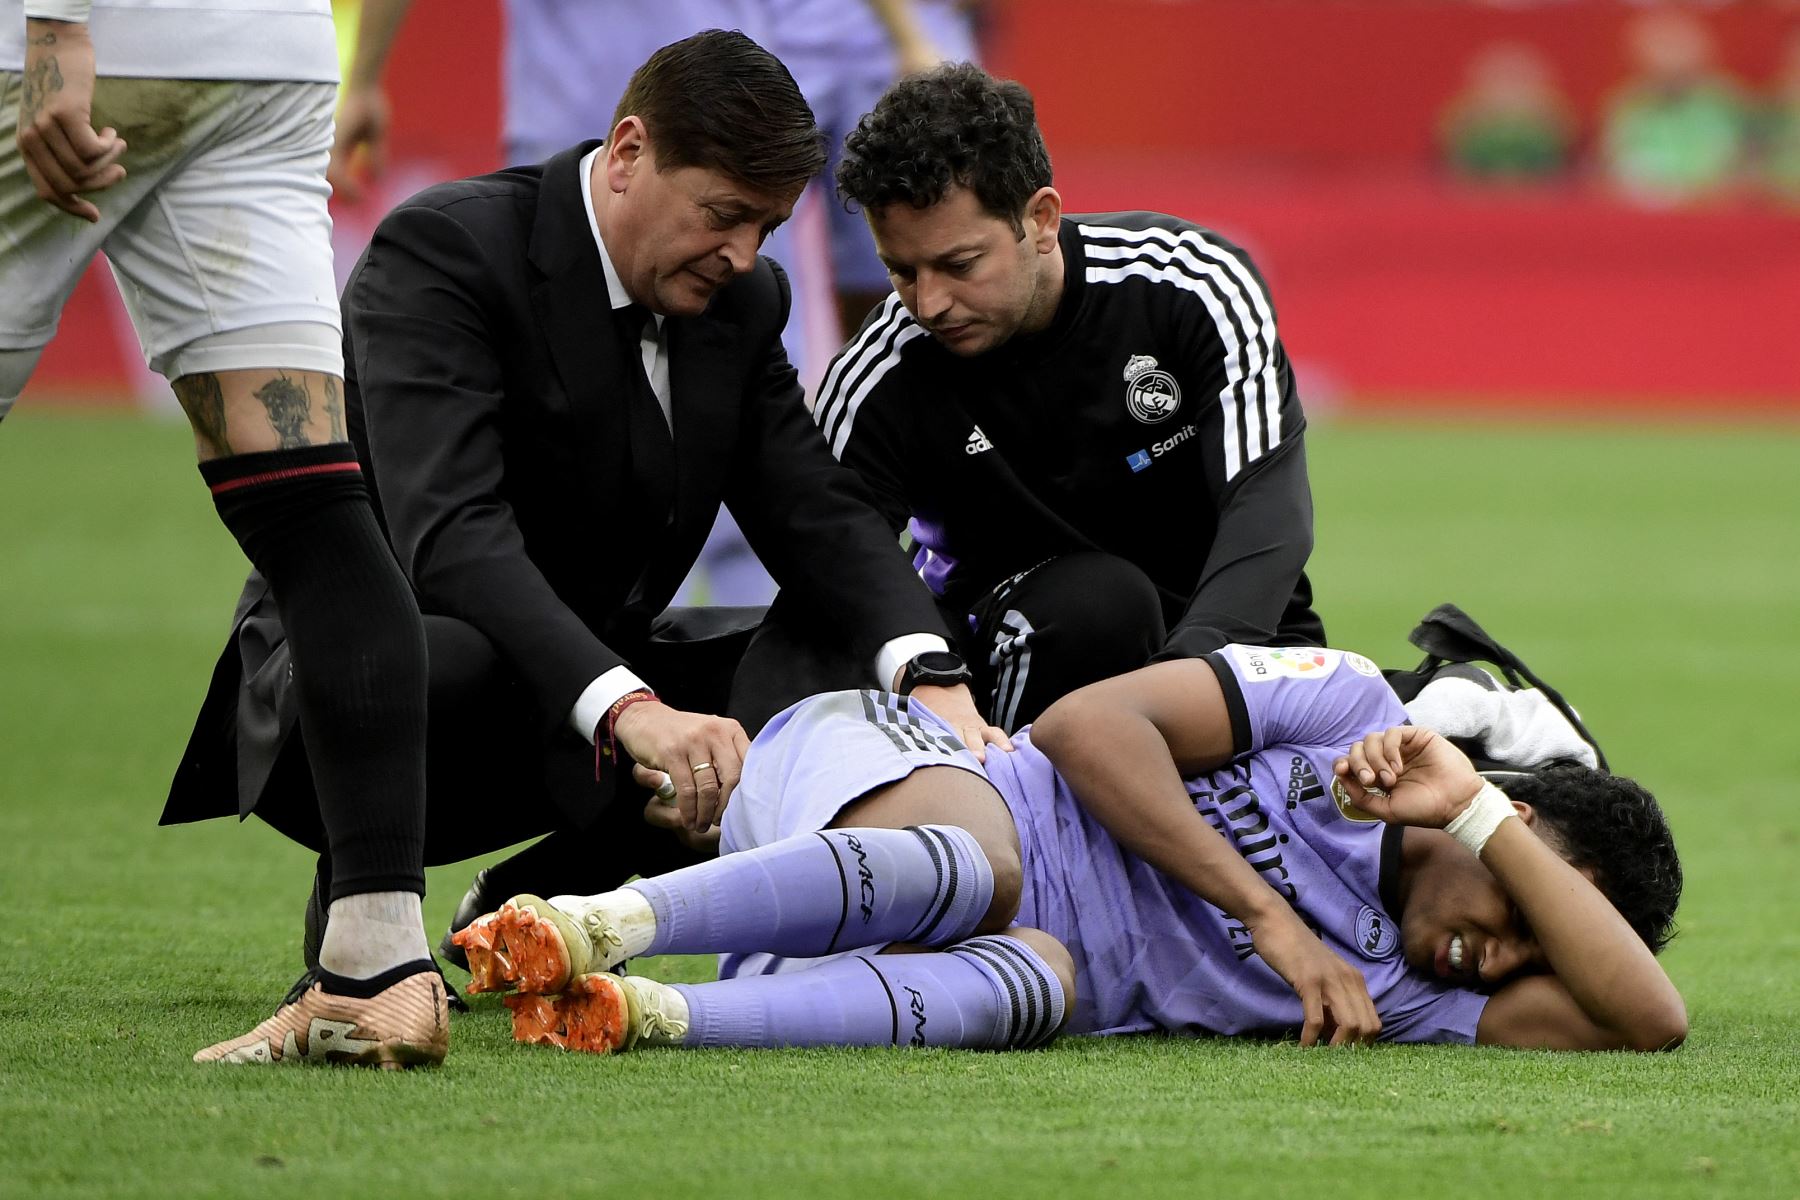 El delantero brasileño del Real Madrid Rodrygo cae lesionado durante el partido de fútbol de la liga española entre el Sevilla FC y el Real Madrid CF.Foto:ANDINA/AFP